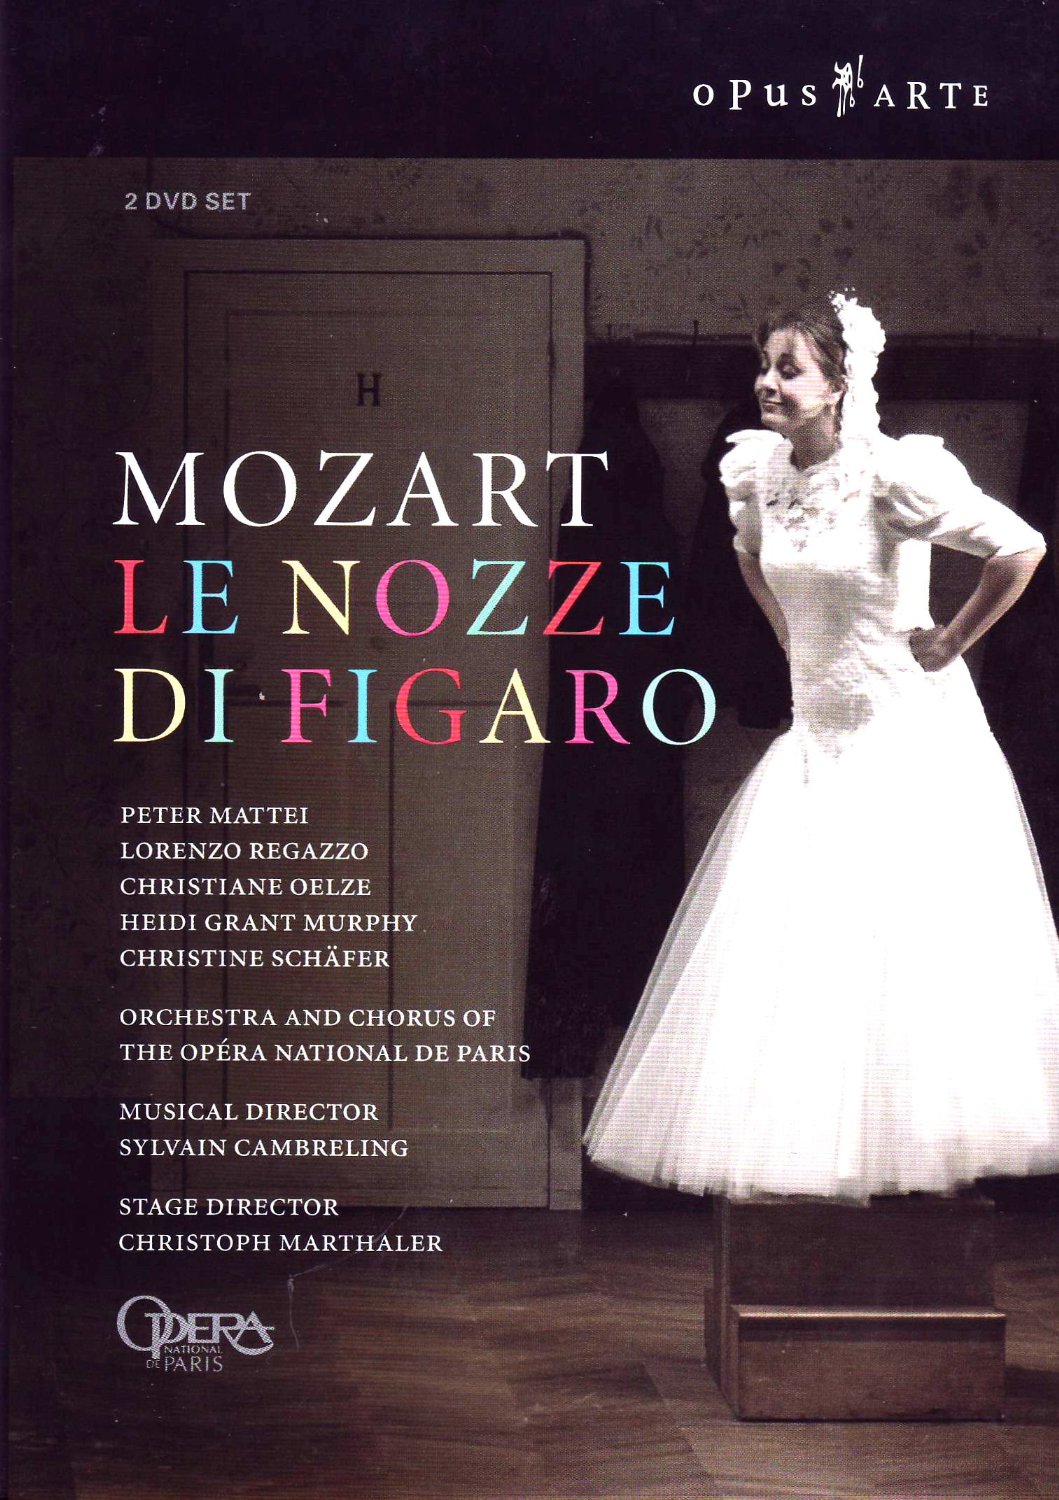 Music Dvd Wolfgang Amadeus Mozart - Le Nozze Di Figaro (2 Dvd) NUOVO SIGILLATO, EDIZIONE DEL 28/08/2006 SUBITO DISPONIBILE